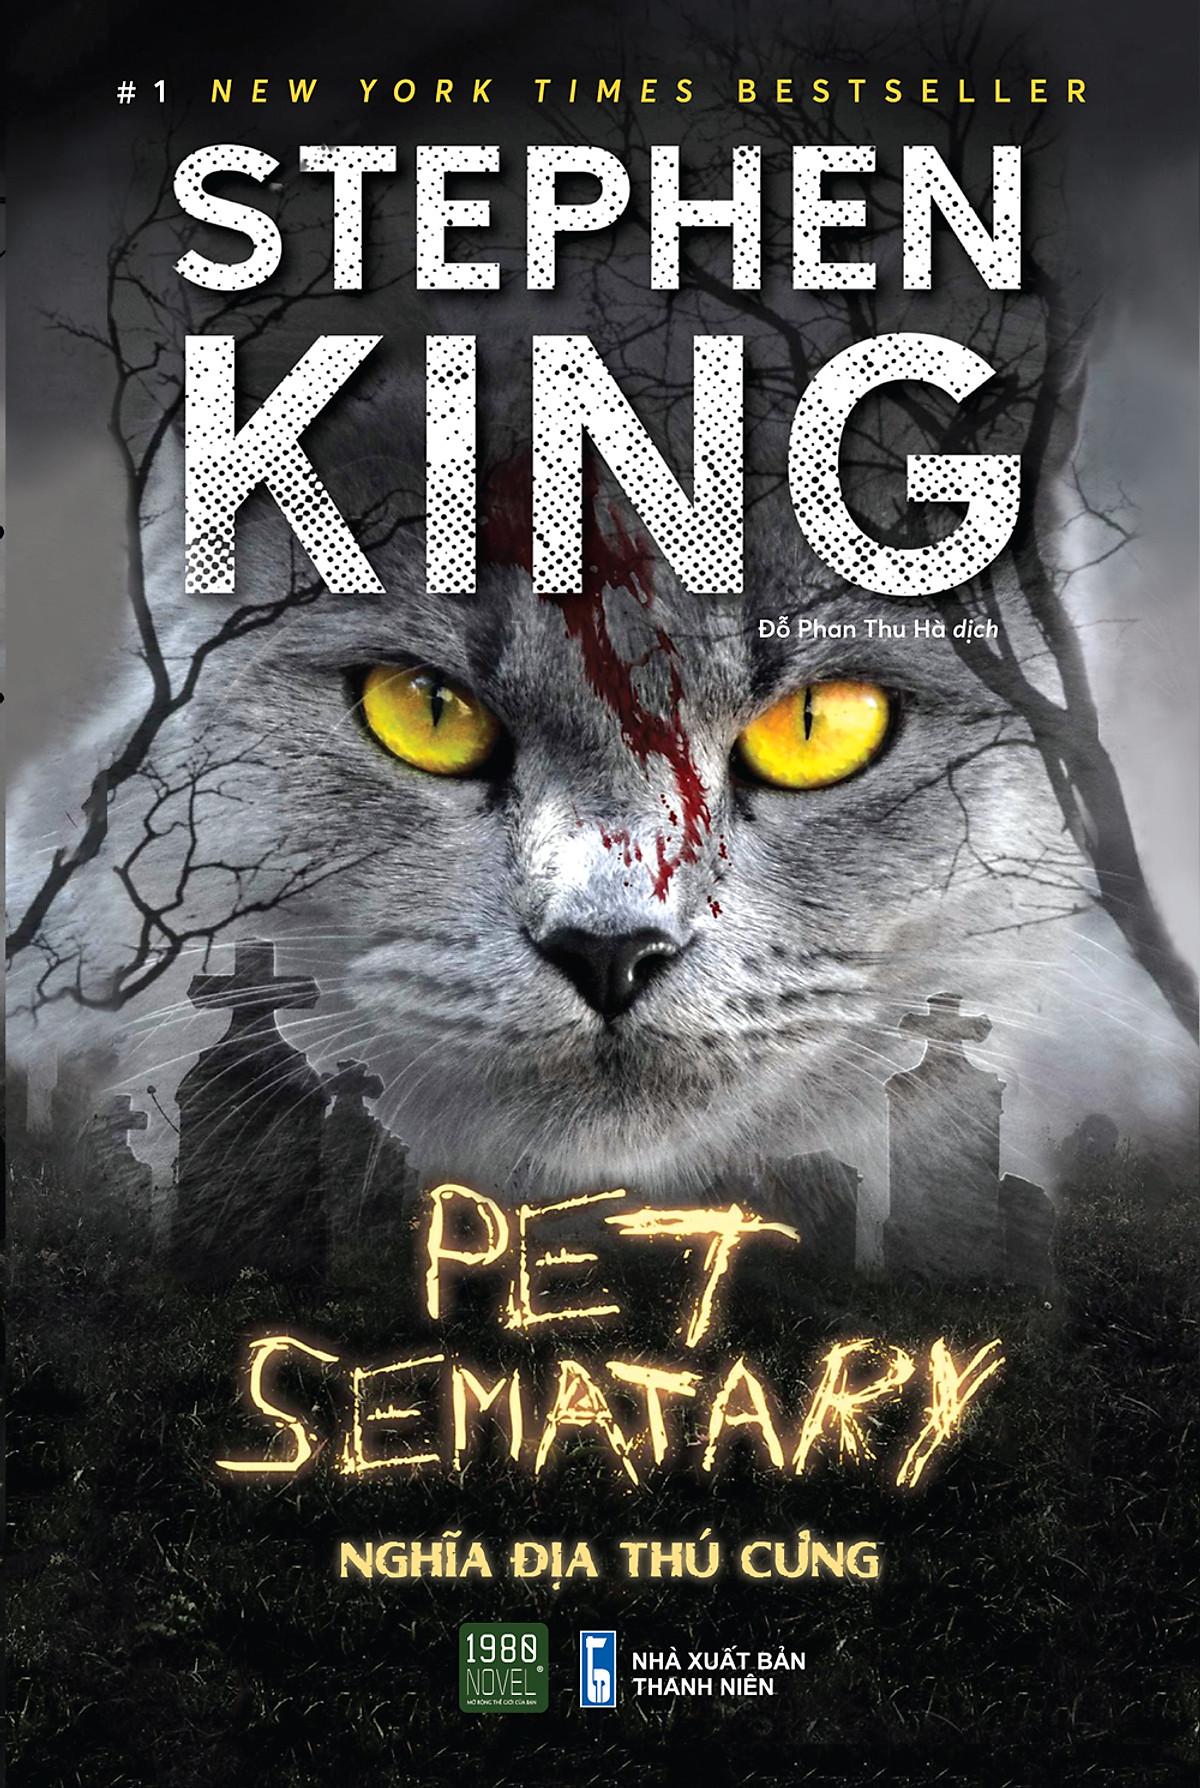 Pet Sematary - Nghĩa địa thú cưng - Bản Quyền